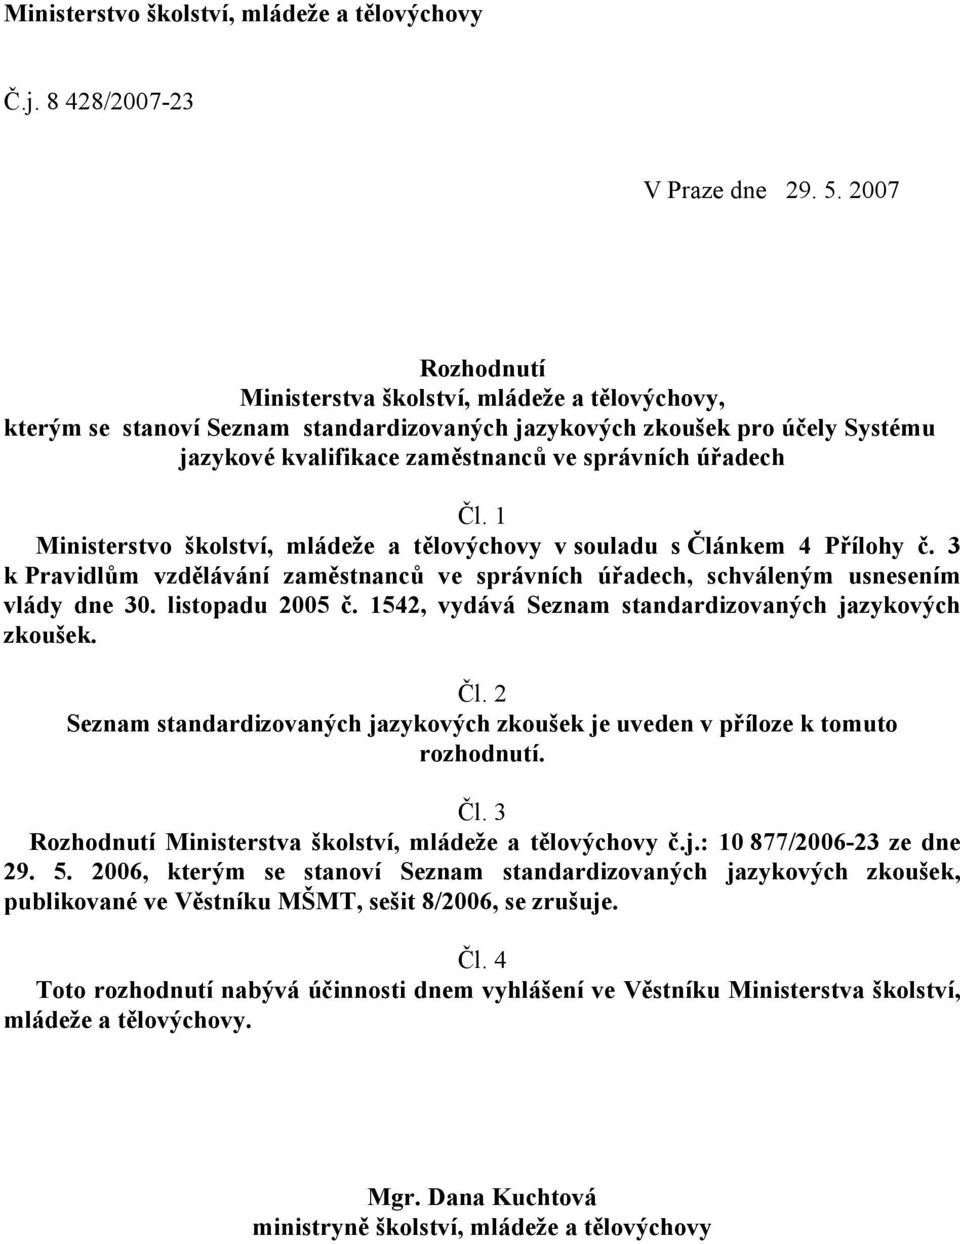 1 Ministerstvo školství, mládeže a tělovýchovy v souladu s Článkem 4 Přílohy č. 3 k Pravidlům vzdělávání zaměstnanců ve správních úřadech, schváleným usnesením vlády dne 30. listopadu 2005 č.